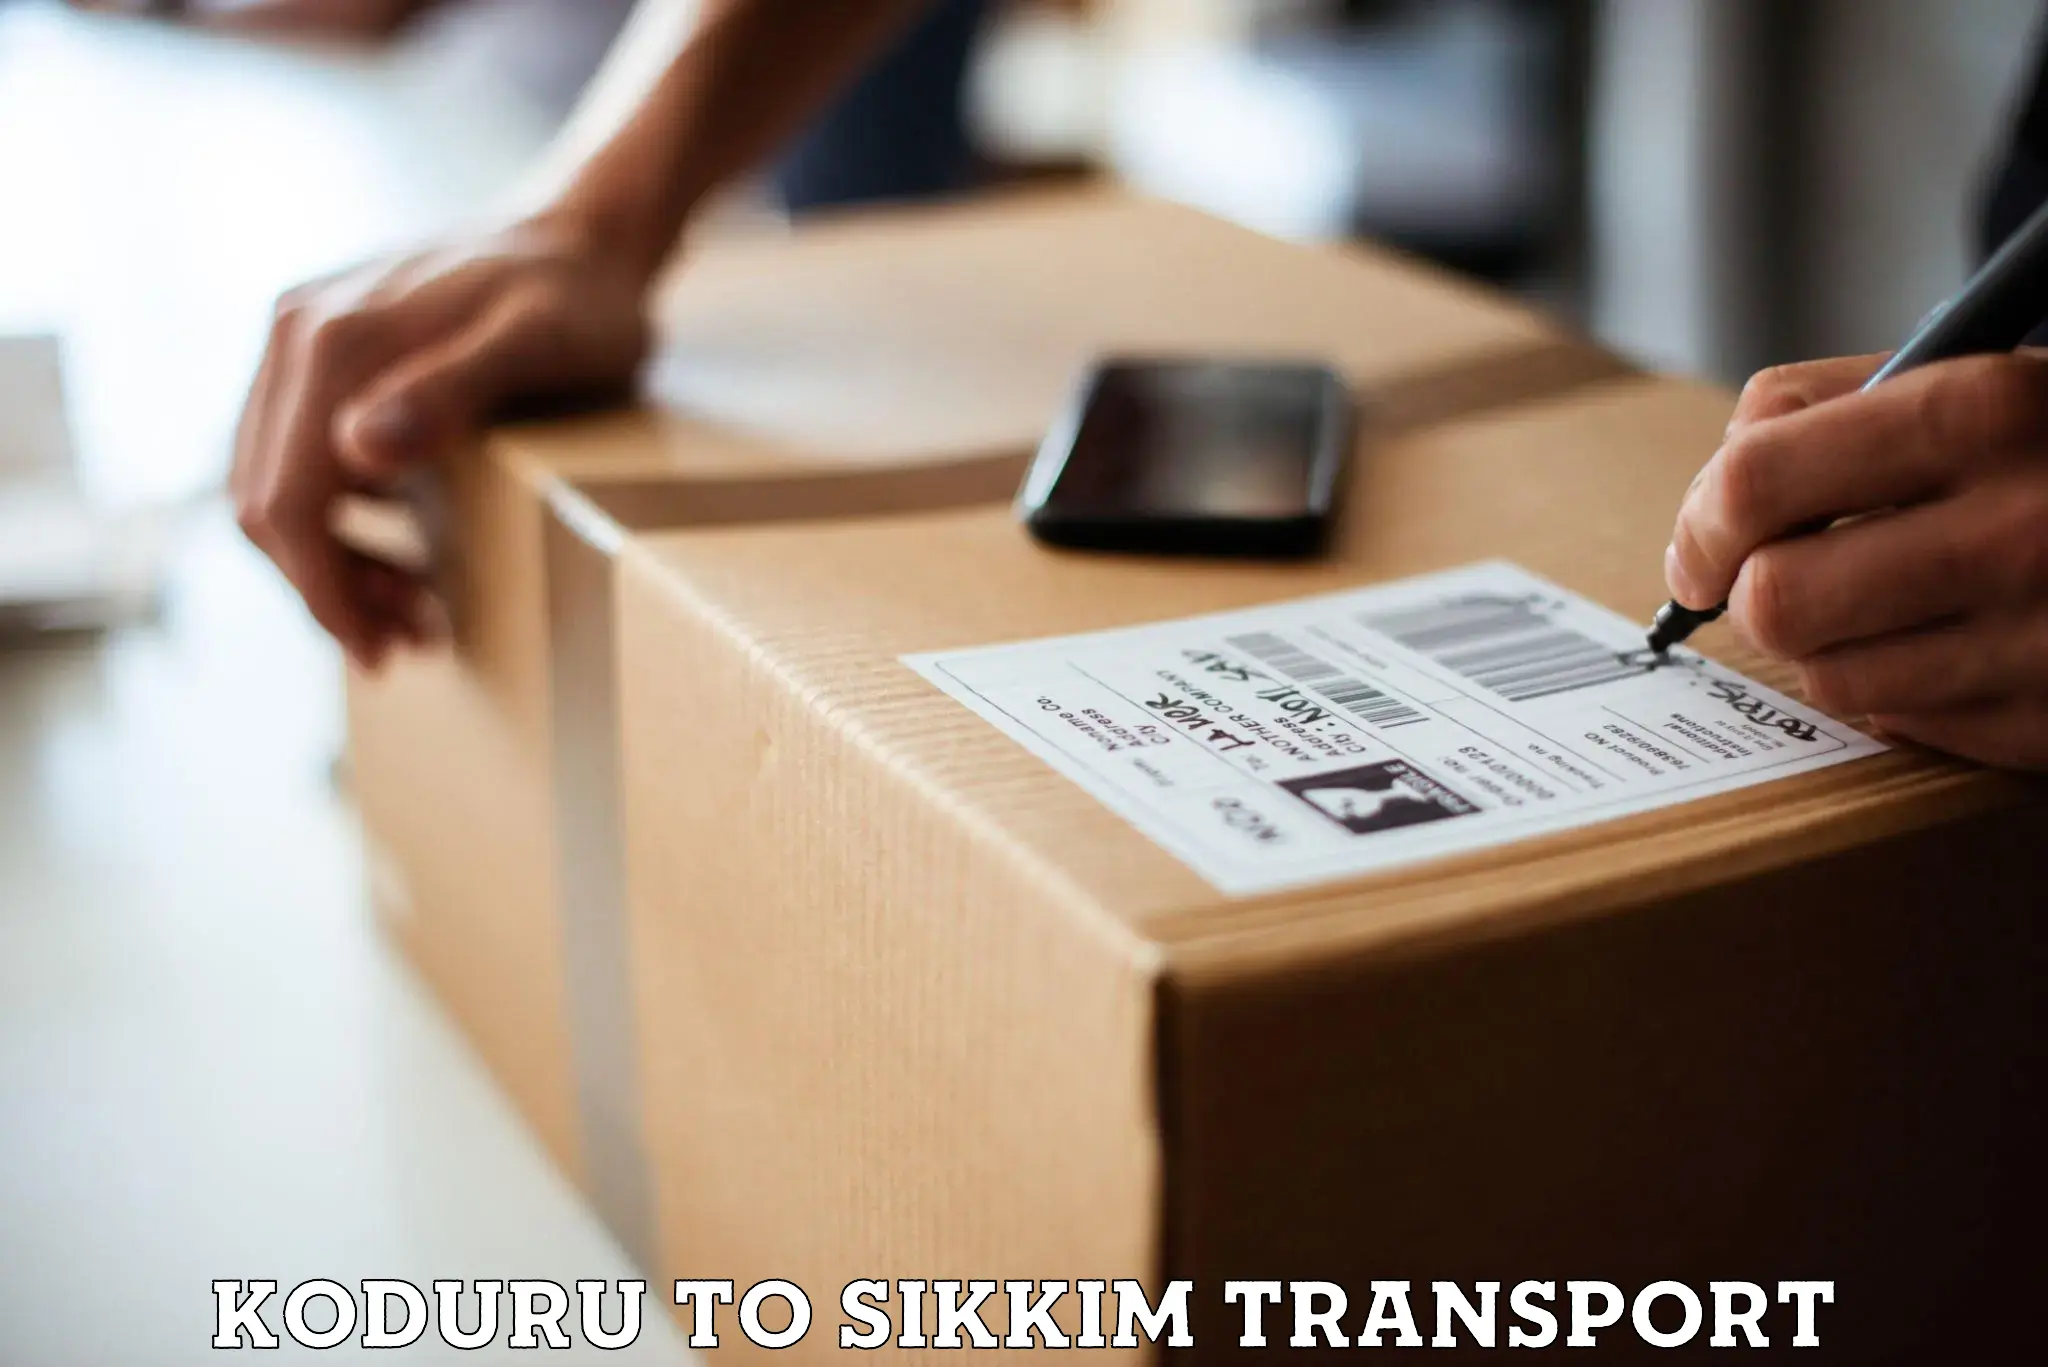 Shipping services Koduru to Pelling